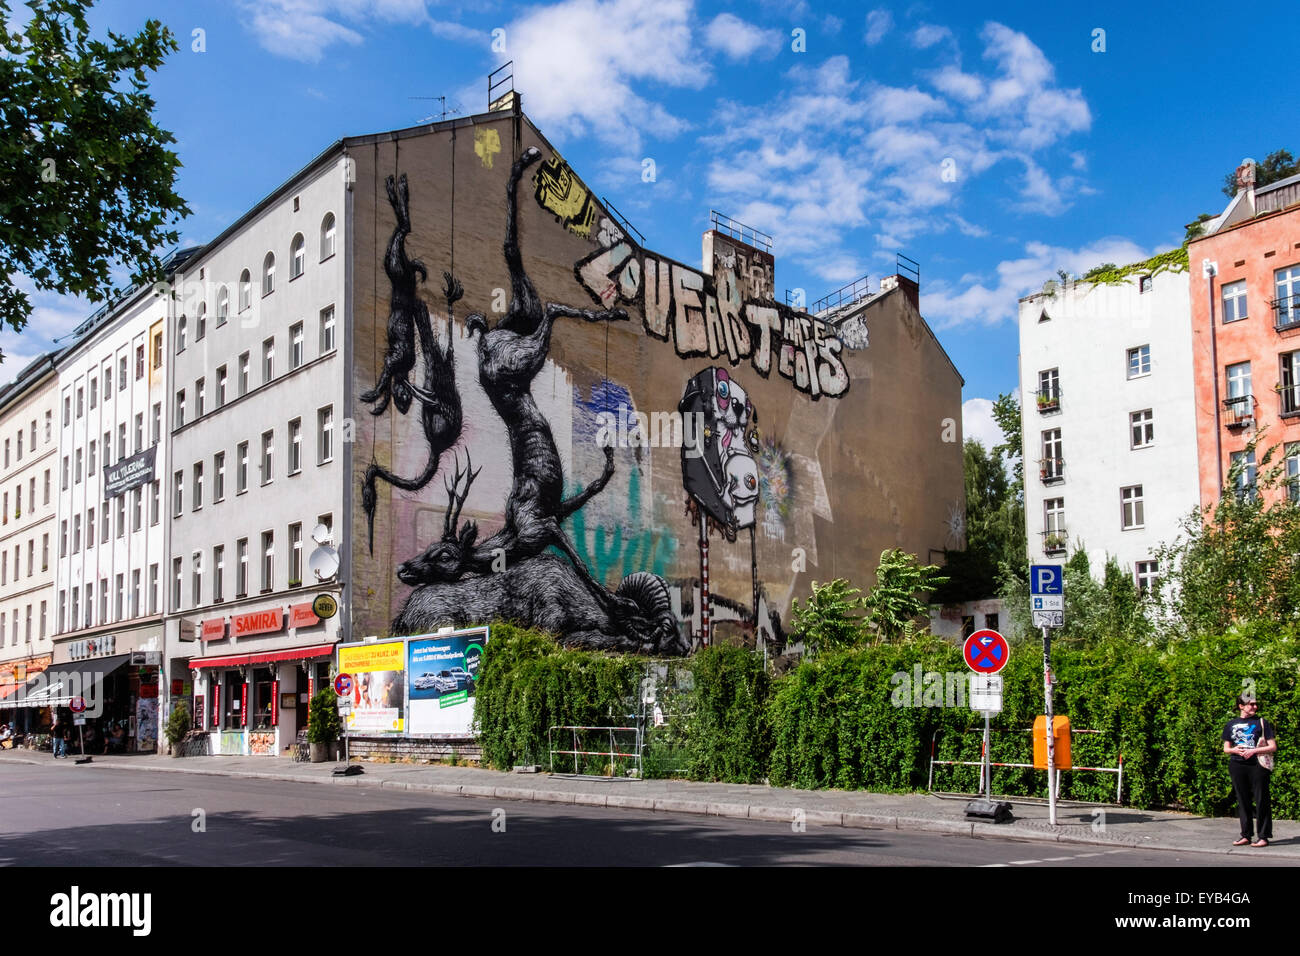 Animales muertos en blanco y negro colgando en el lateral del edificio, mural del artista de calle Roa de Gante en Kreuzberg, Berlín Foto de stock